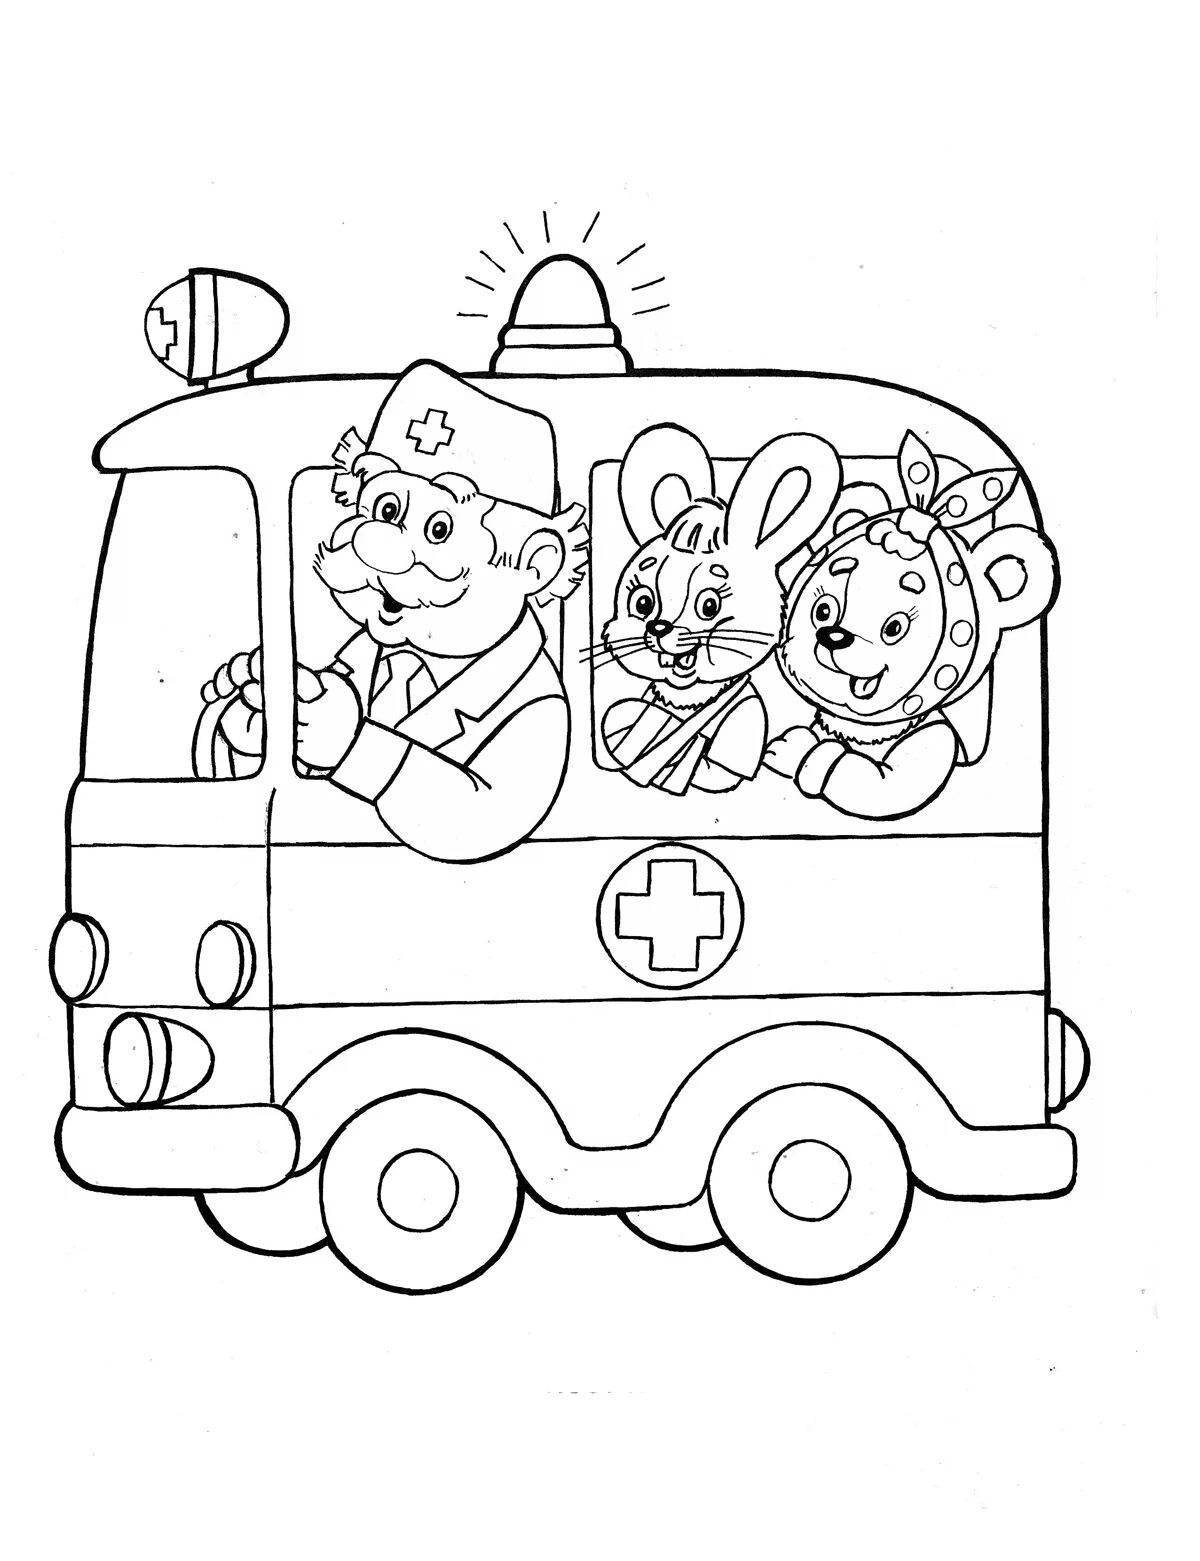 Великолепная страница раскраски скорой помощи для детей 3-4 лет